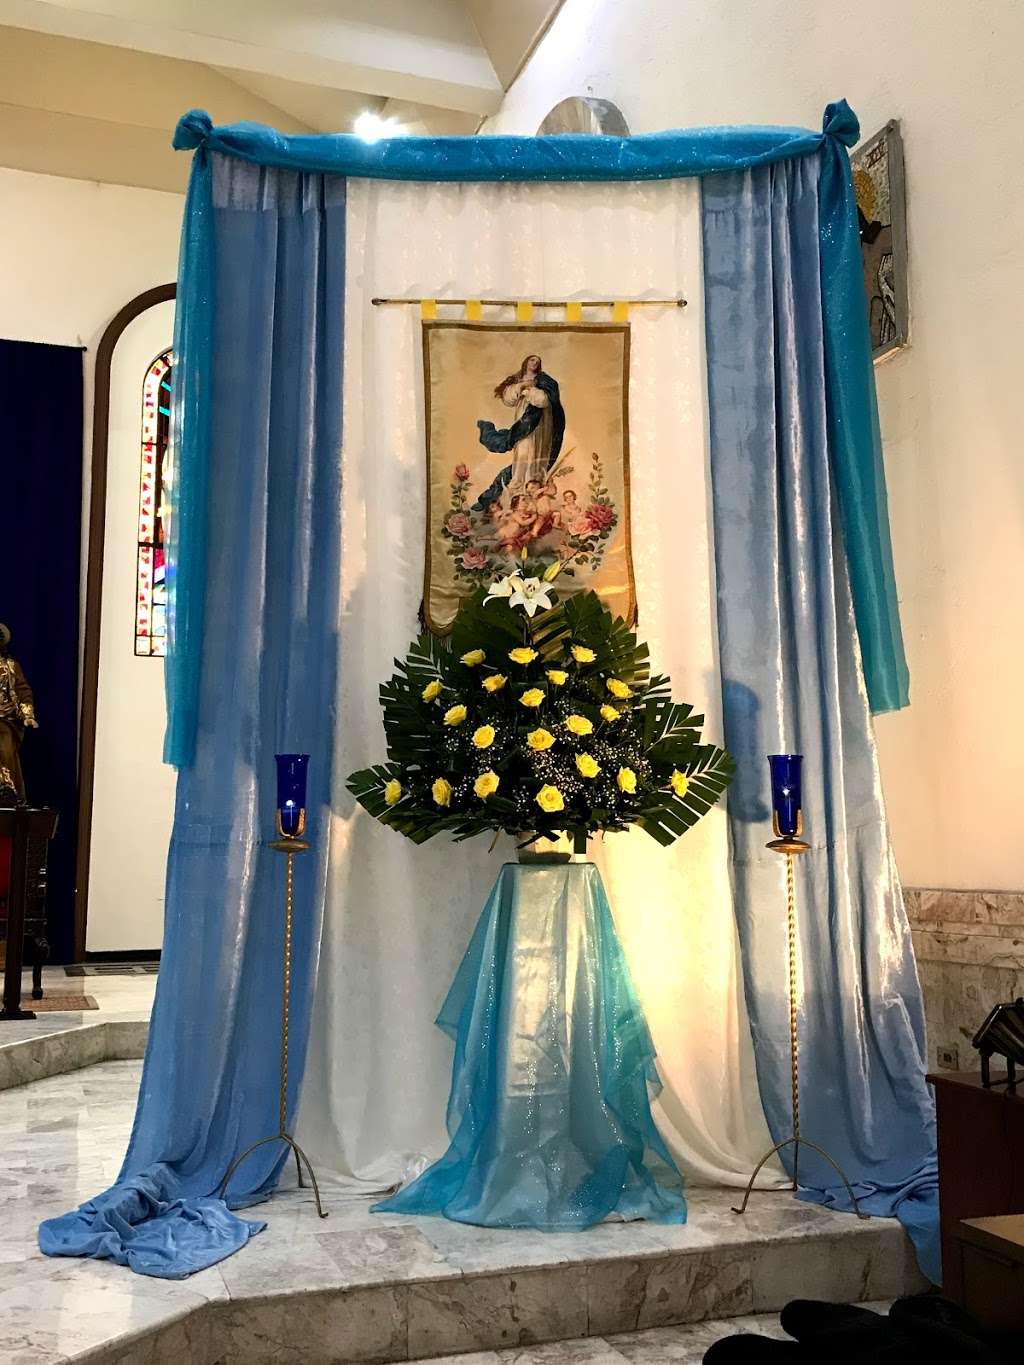 Santuario de Nuestra Señora del Sagrado Corazón | Av. Juan Sarabia 8585, Zona Centro, 20000 Tijuana, B.C., Mexico | Phone: 664 684 2822